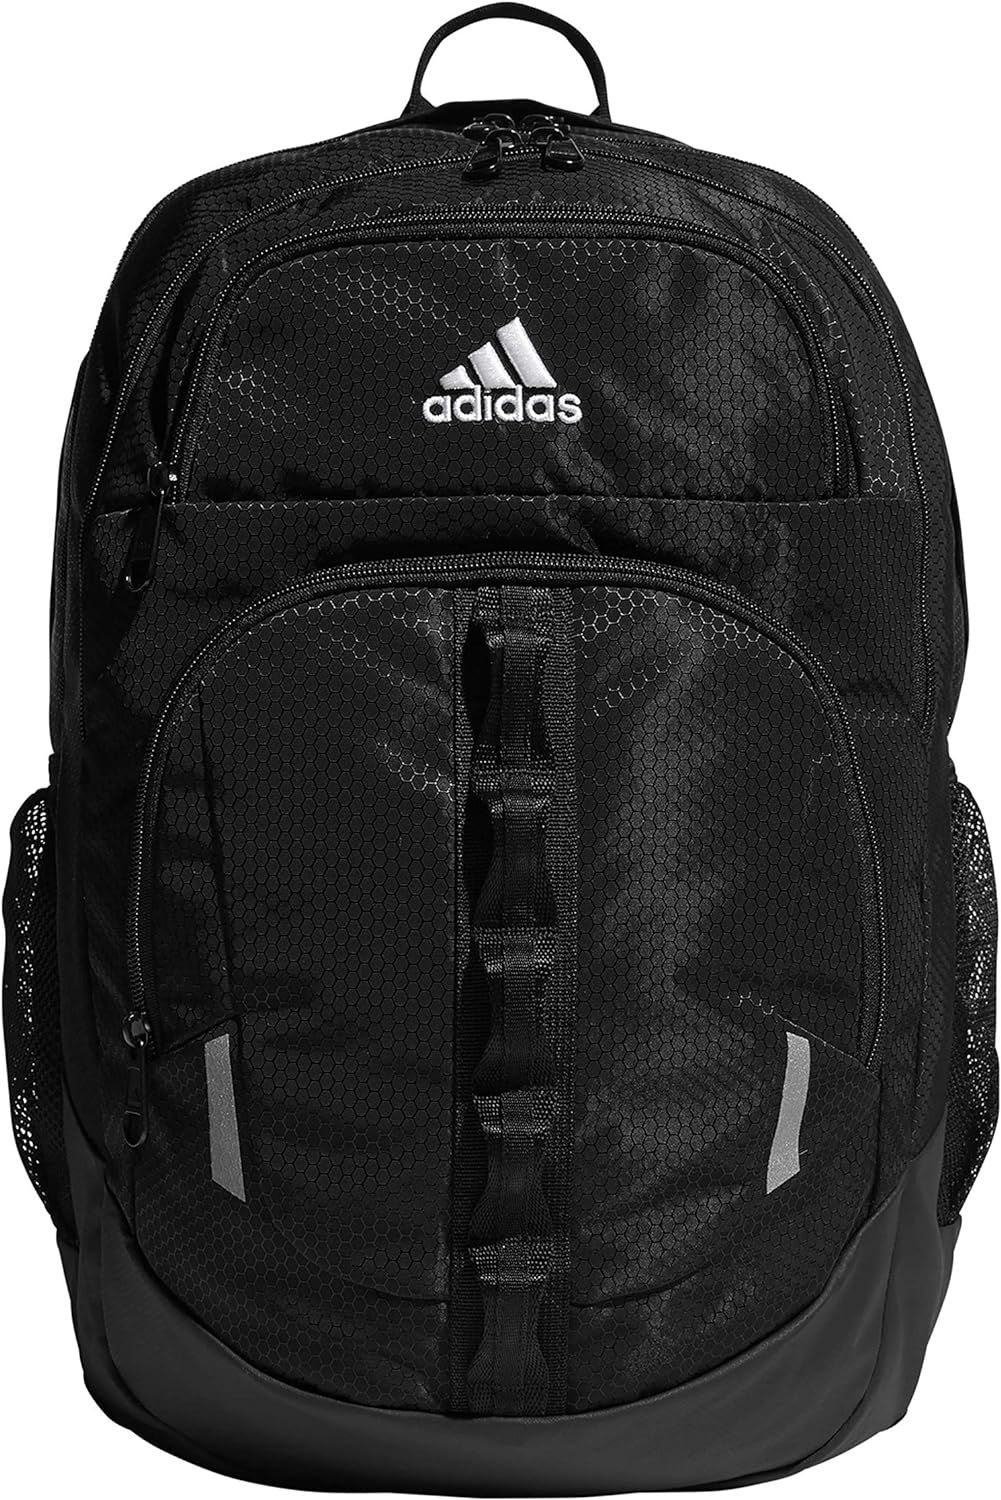 adidas Unisex Prime Backpack, Black/White, One Size | Amazon (US)